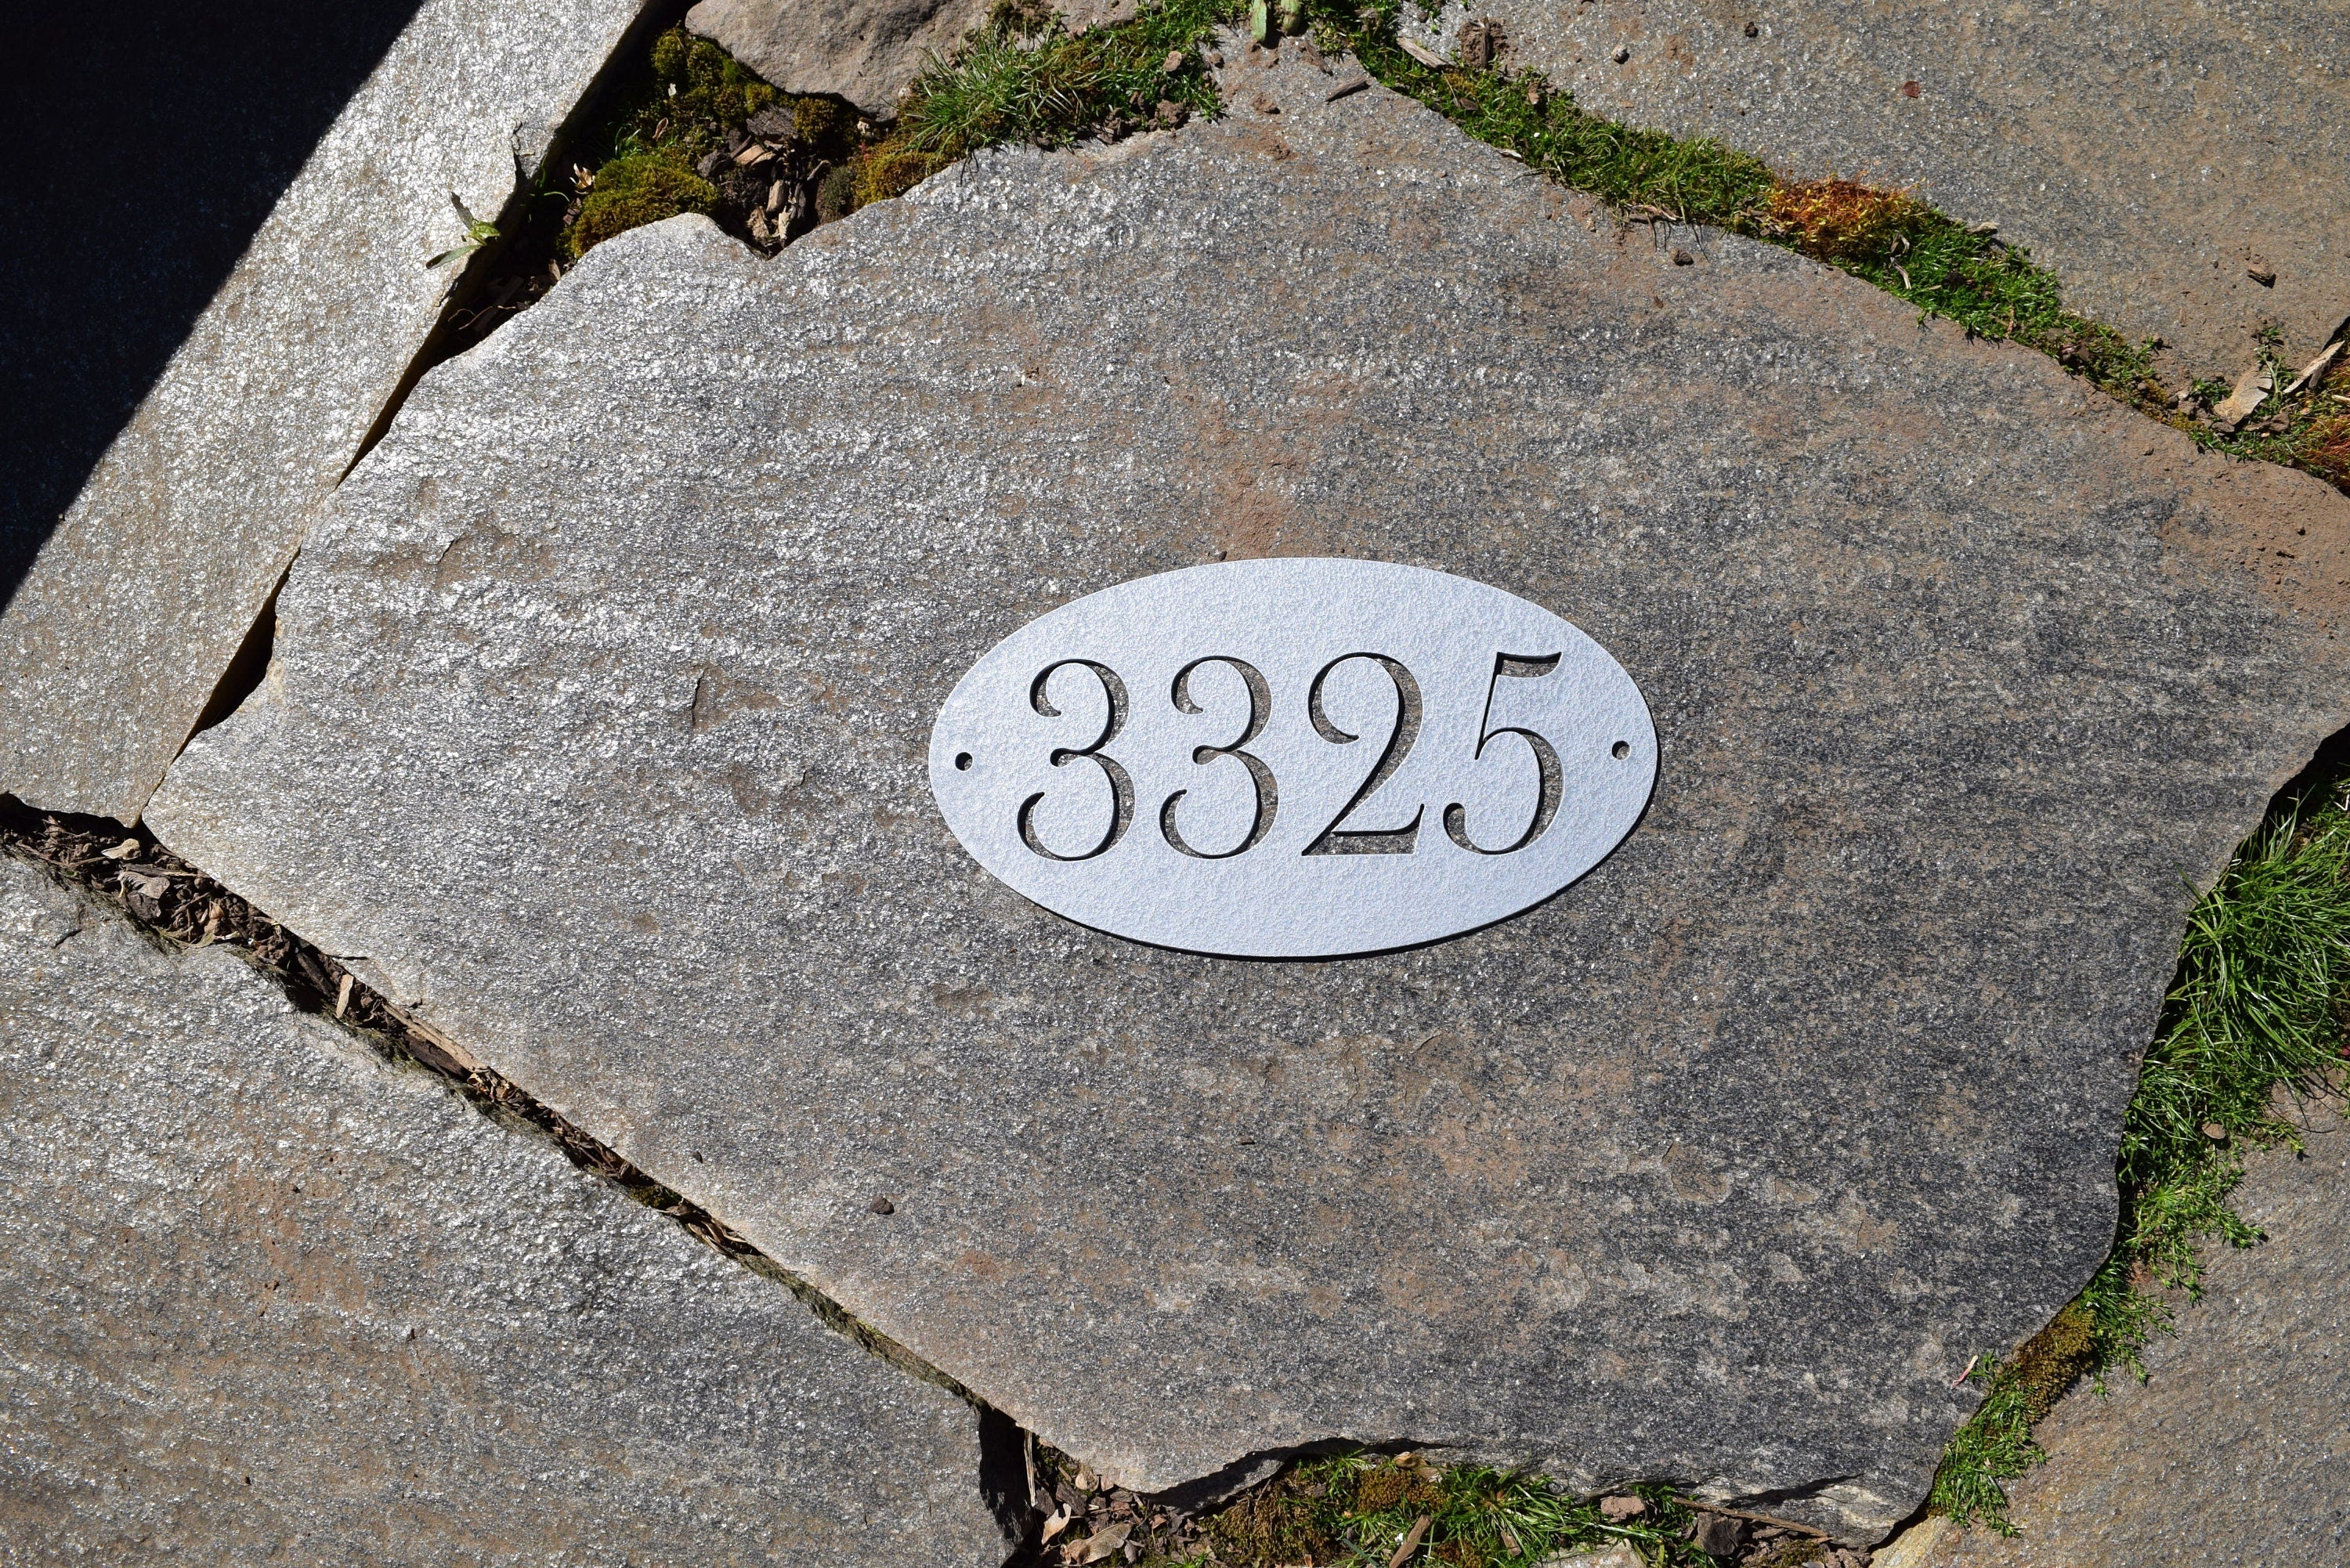 Baskerville Metal Oval Horizontal Address Sign